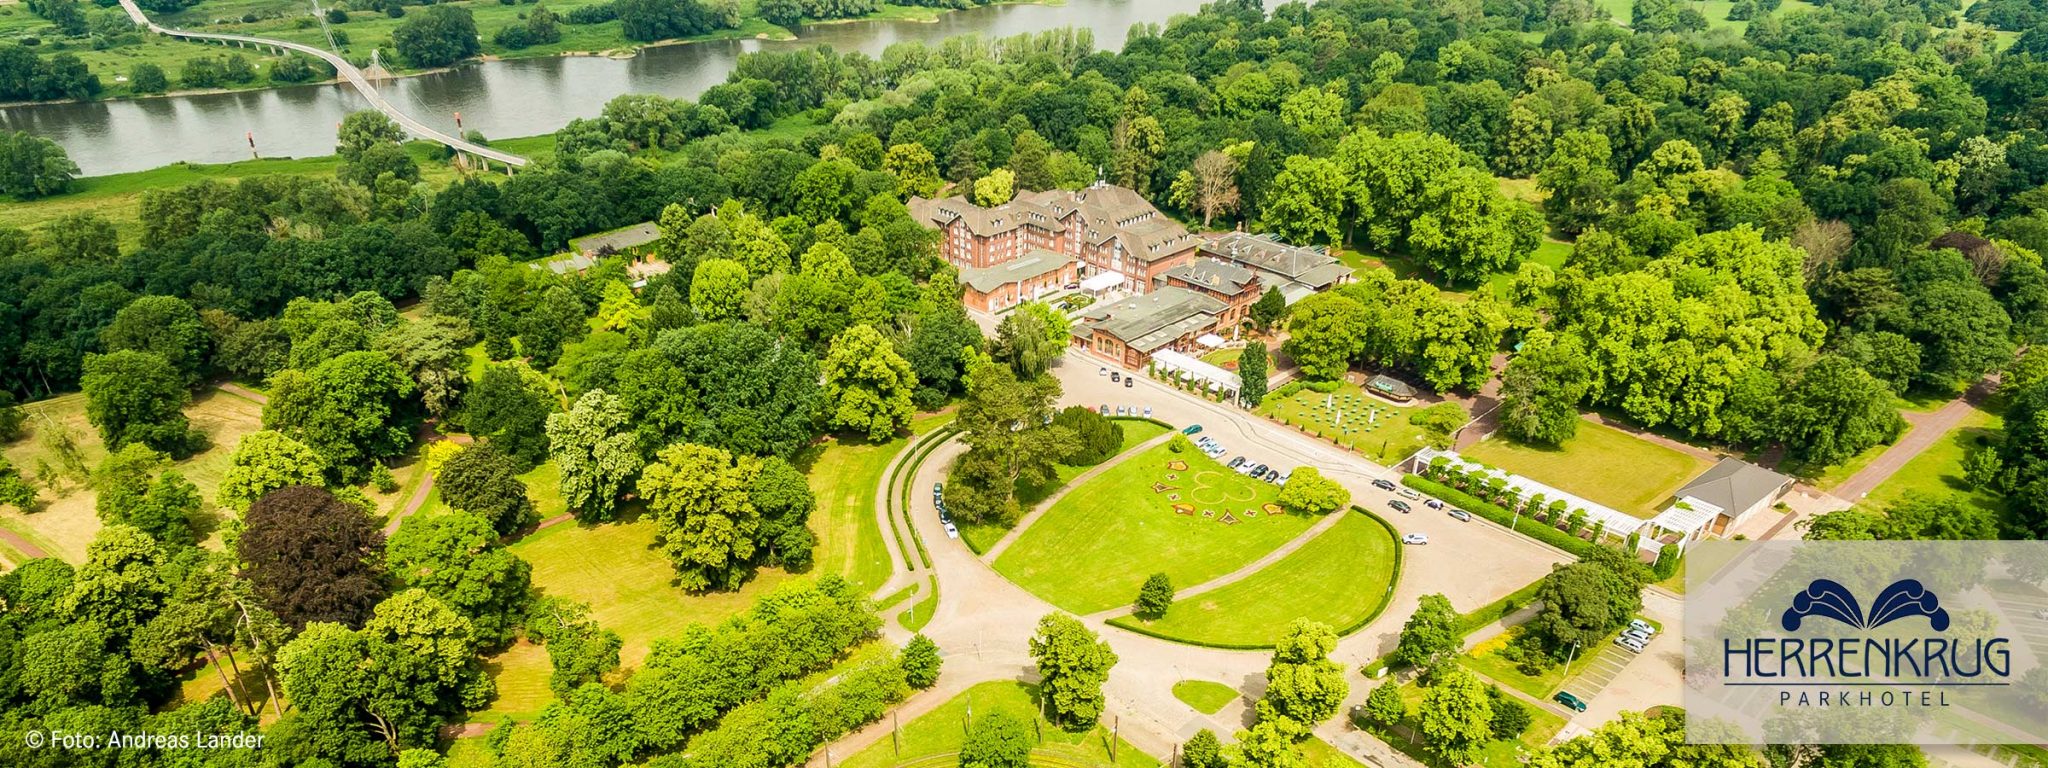 Dorint Herrenkrug Parkhotel Magdeburg